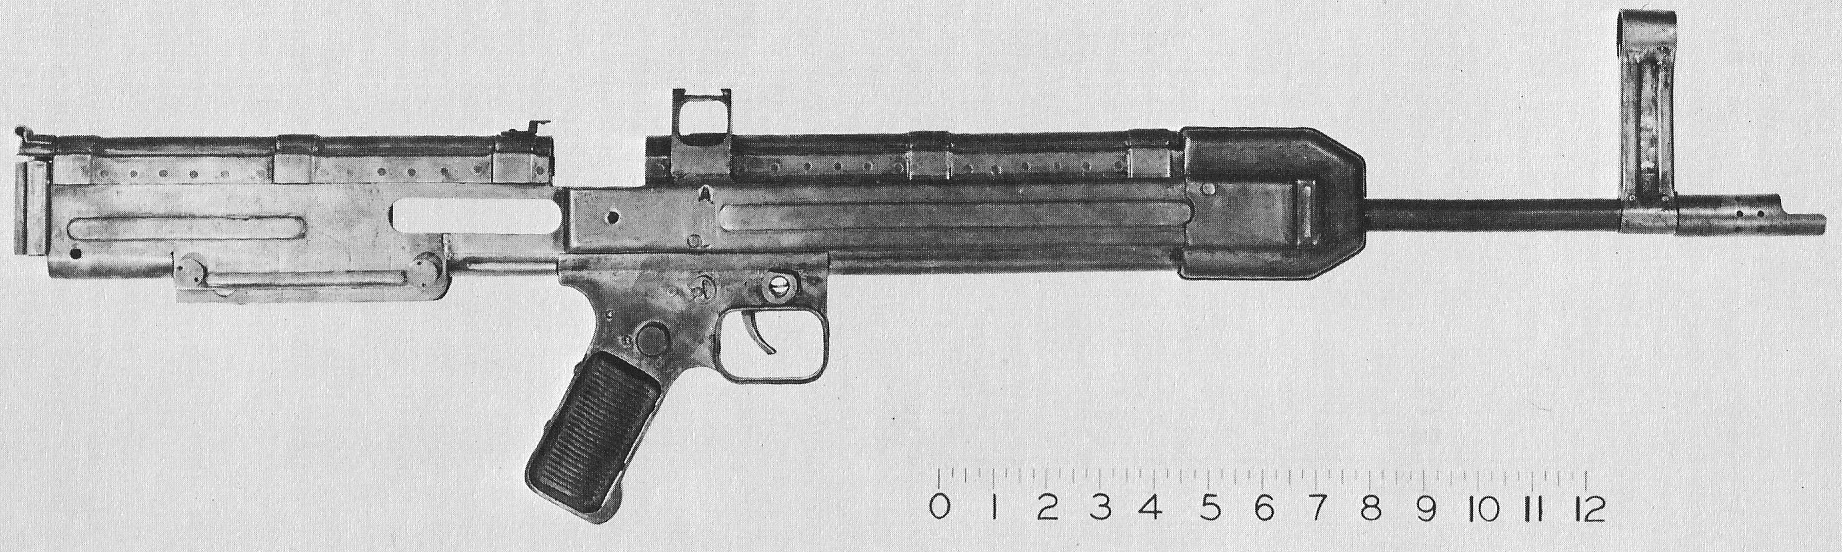 Knorr-Bremse paratrooper rifle, Gun Wiki